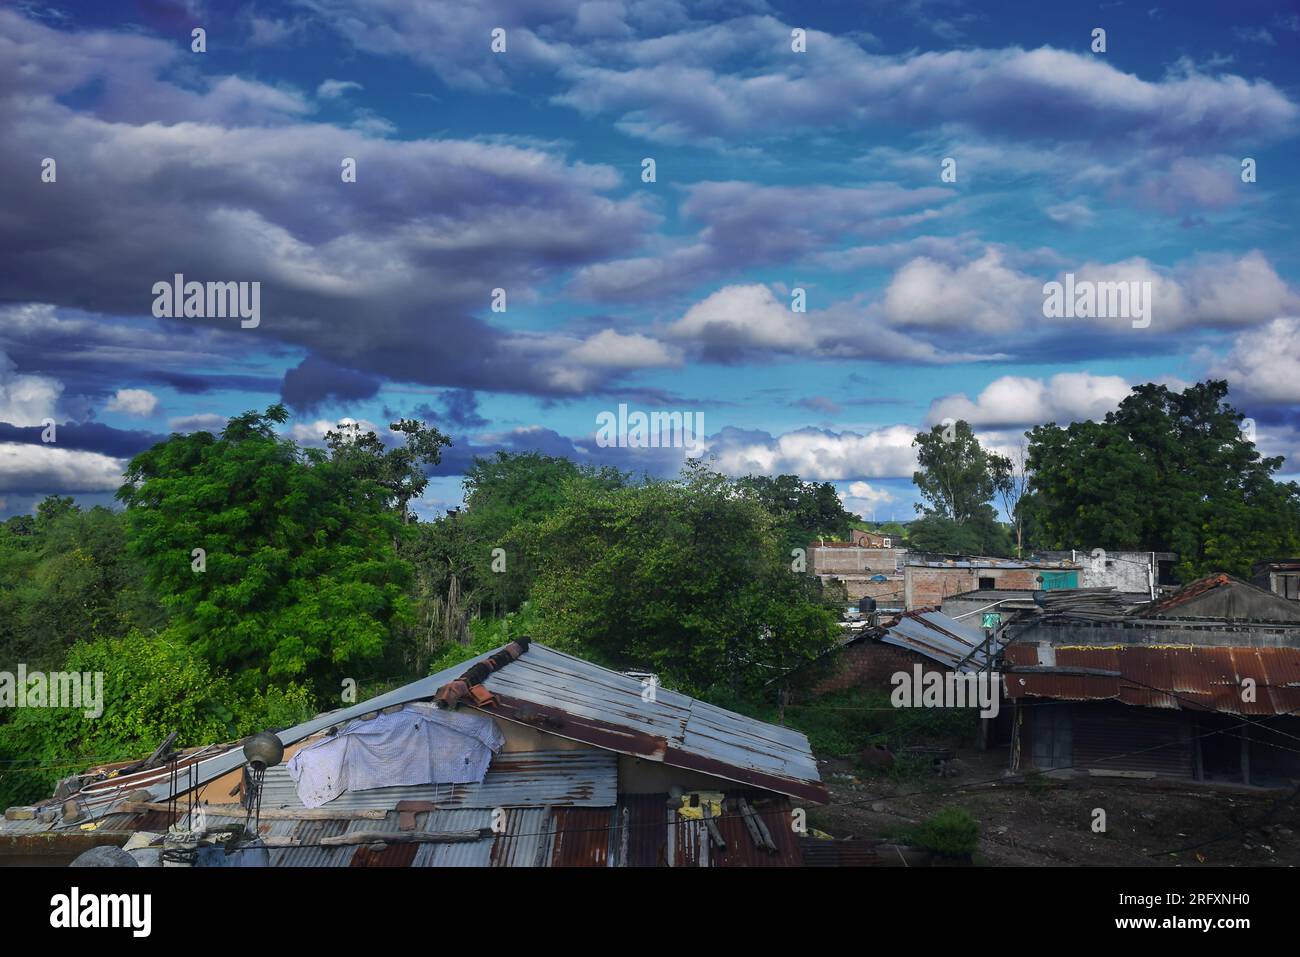 Splendida vista del villaggio indiano nella stagione delle piogge, cielo nuvoloso e vegetazione Foto Stock